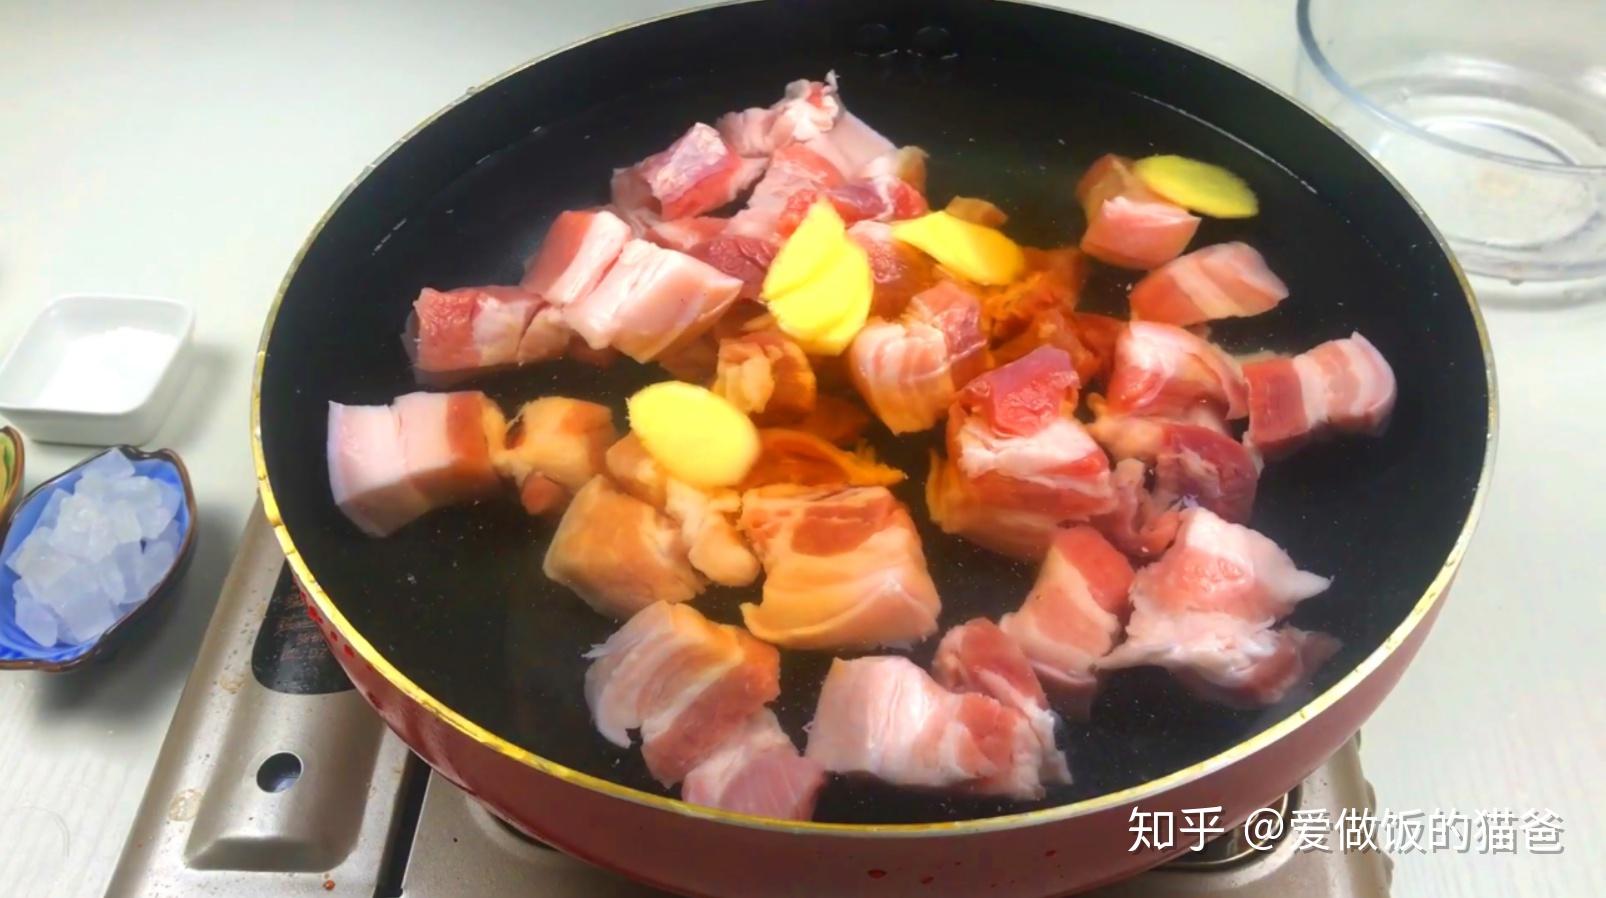 砂锅红烧肉怎么做_砂锅红烧肉的做法_妖妖~_豆果美食